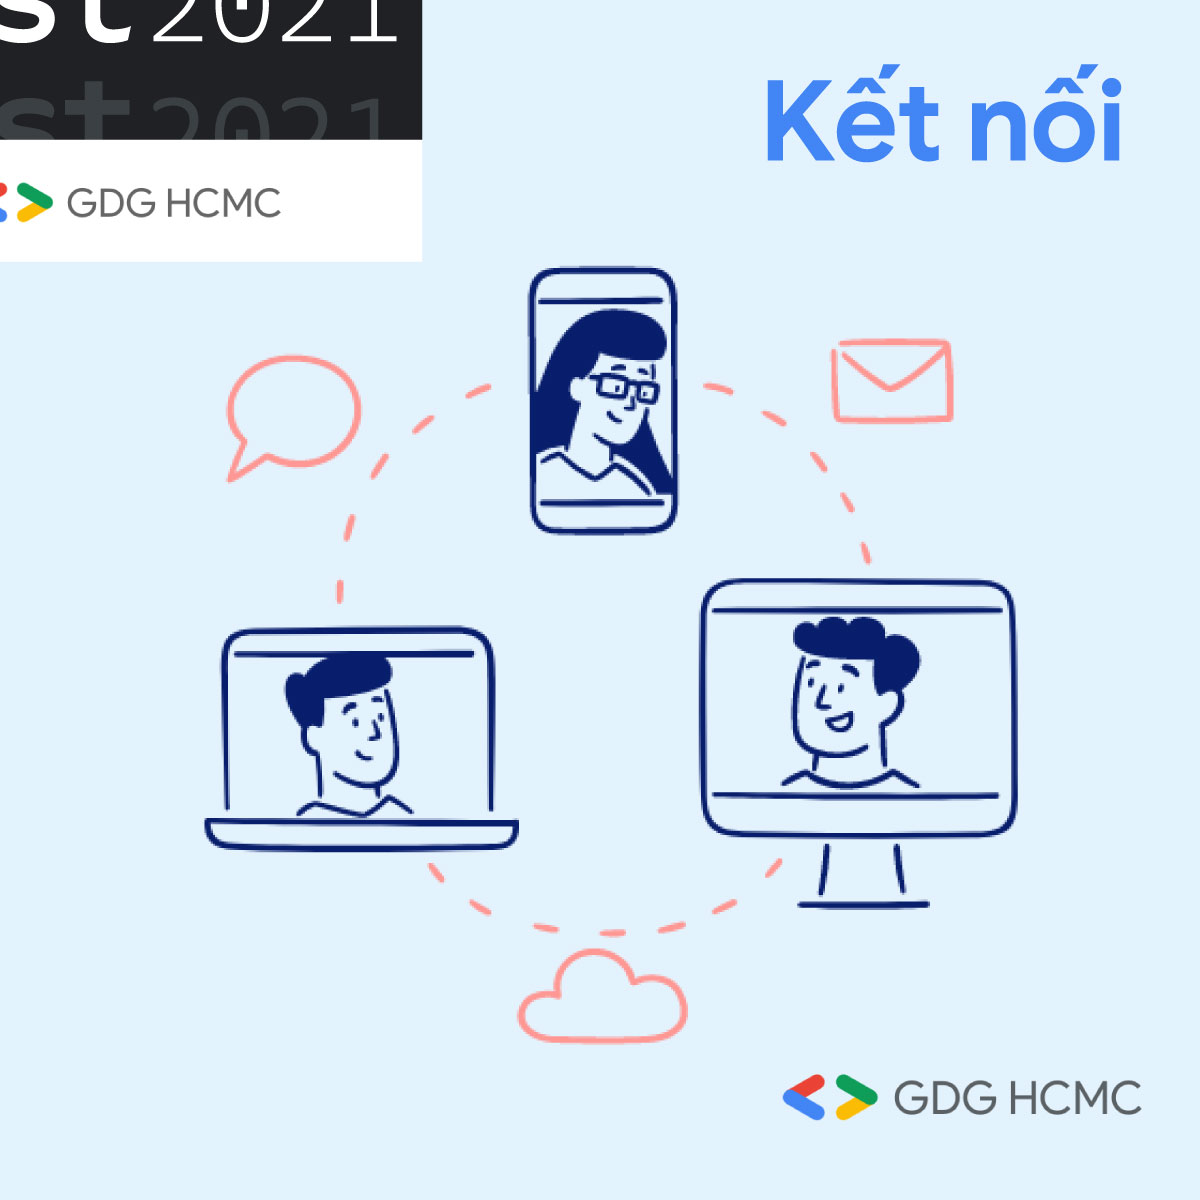 Google Developers Group DevFest HCMC 2021: Kỳ hội học hỏi và tranh tài dành riêng cho người yêu thích công nghệ